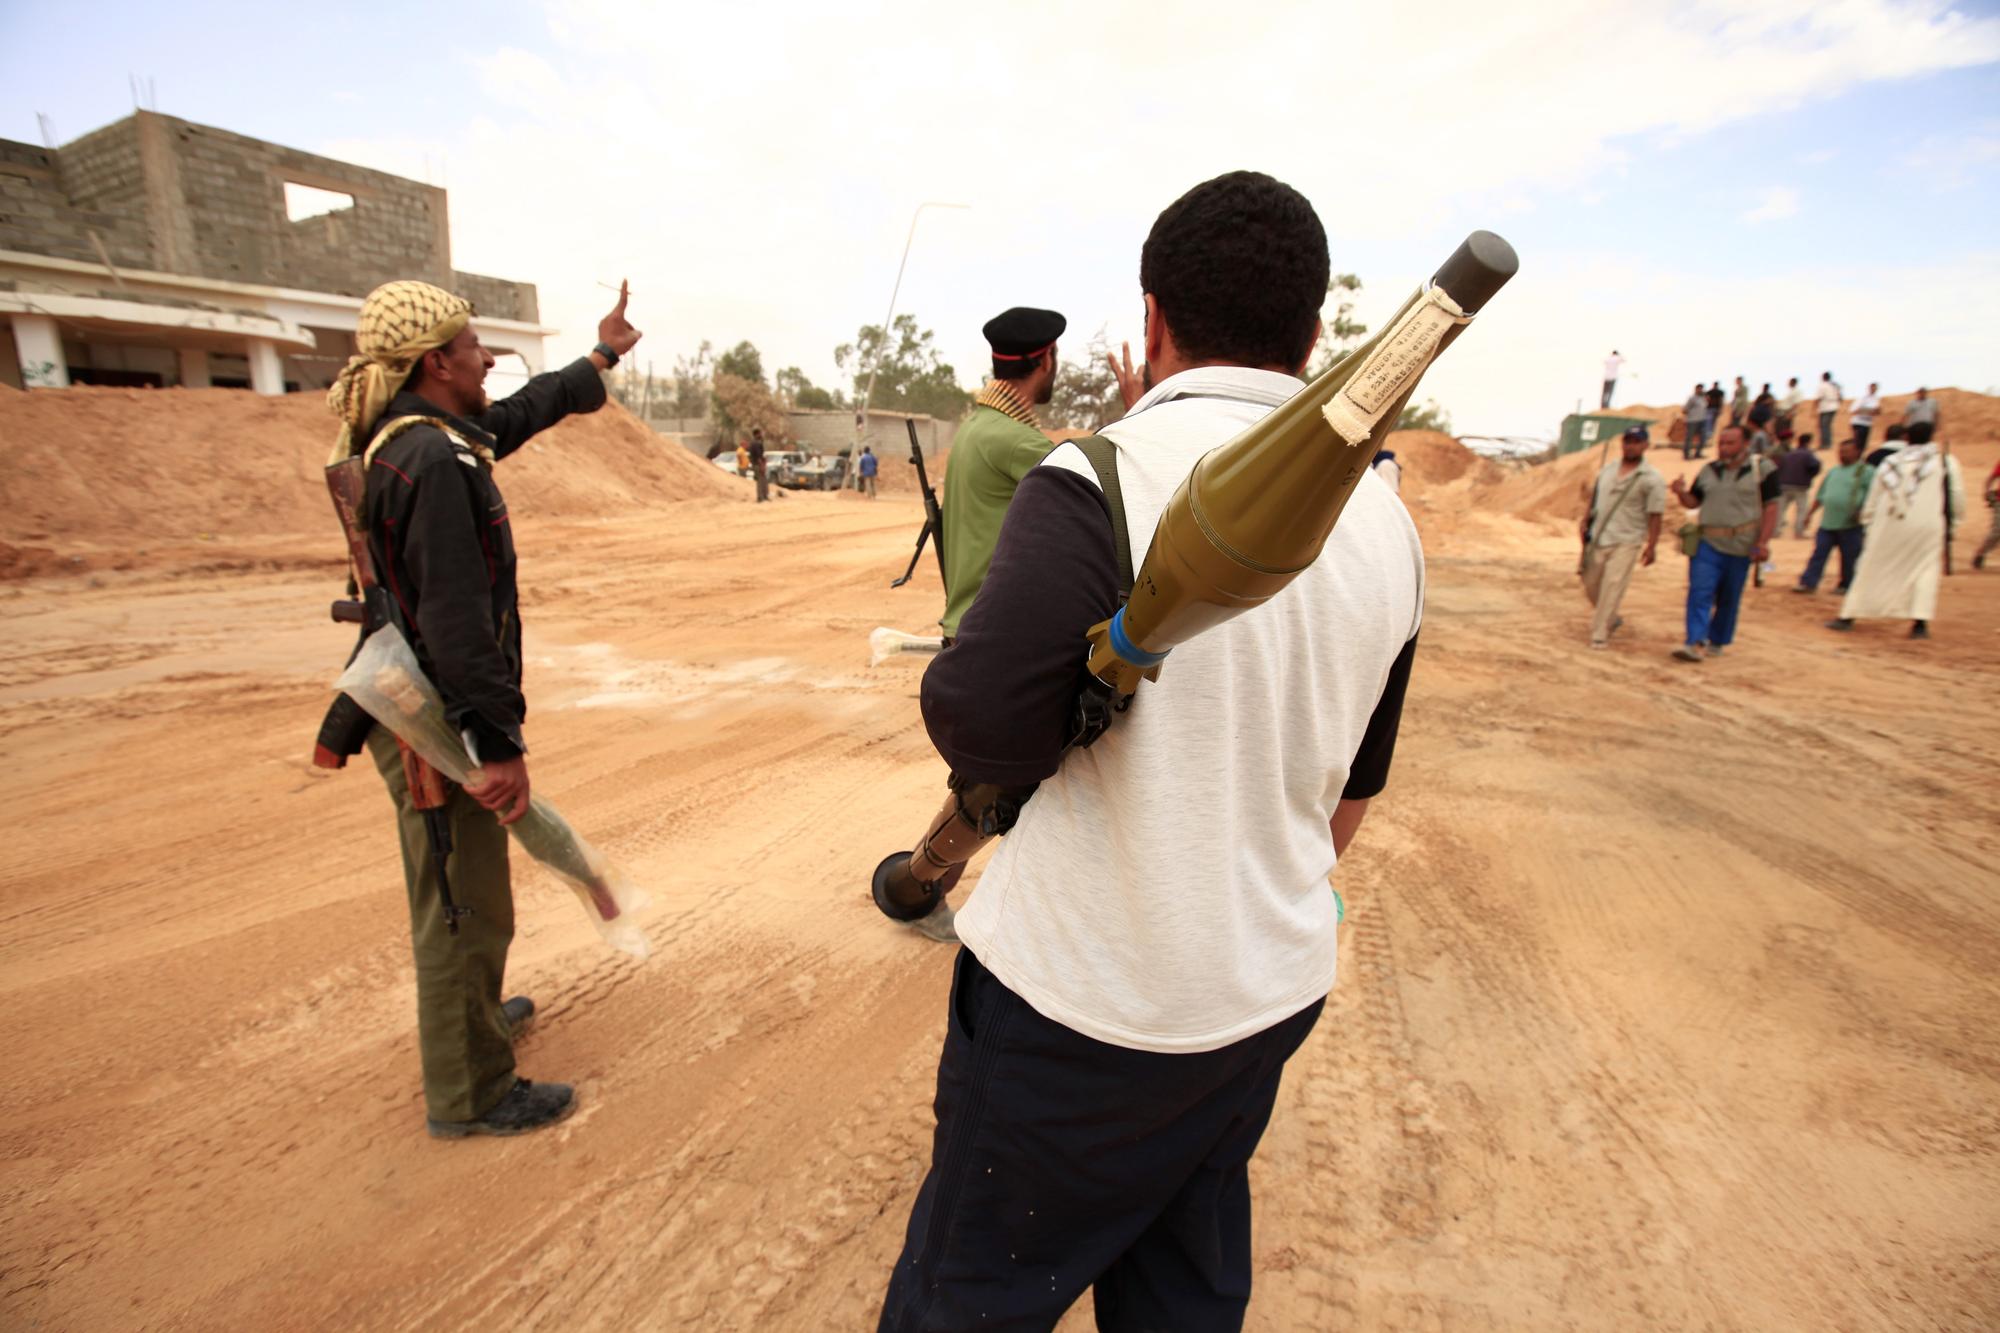 06 12 libye2 reu [REUTERS - � Zohra Bensemra / Reuters]